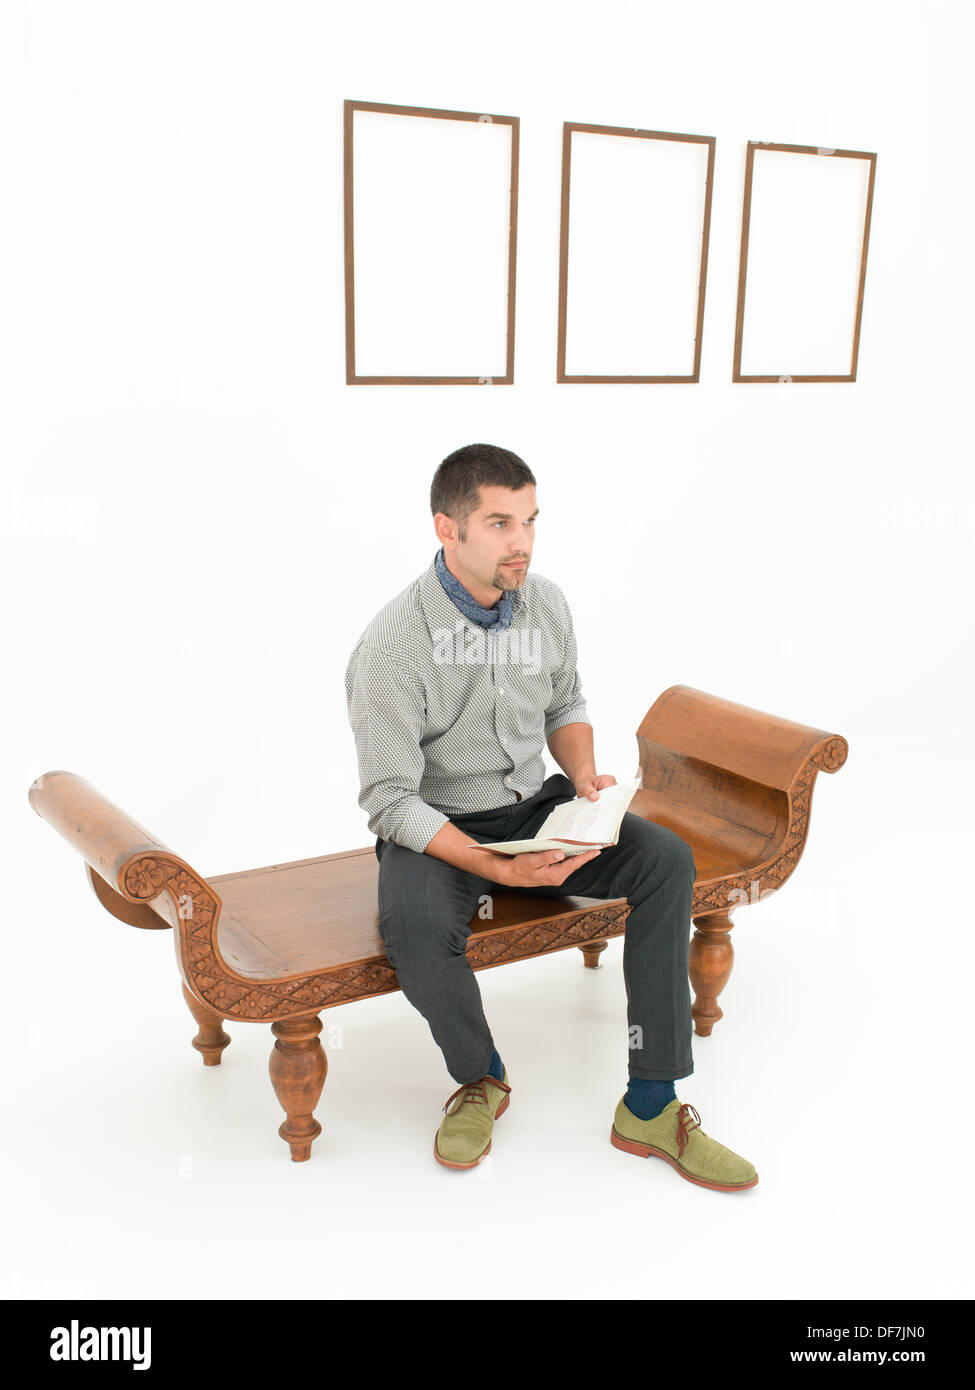 Young caucasian homme assis sur un banc en bois brun tenant un livre, en face de cadres vides affiché sur mur blanc Banque D'Images